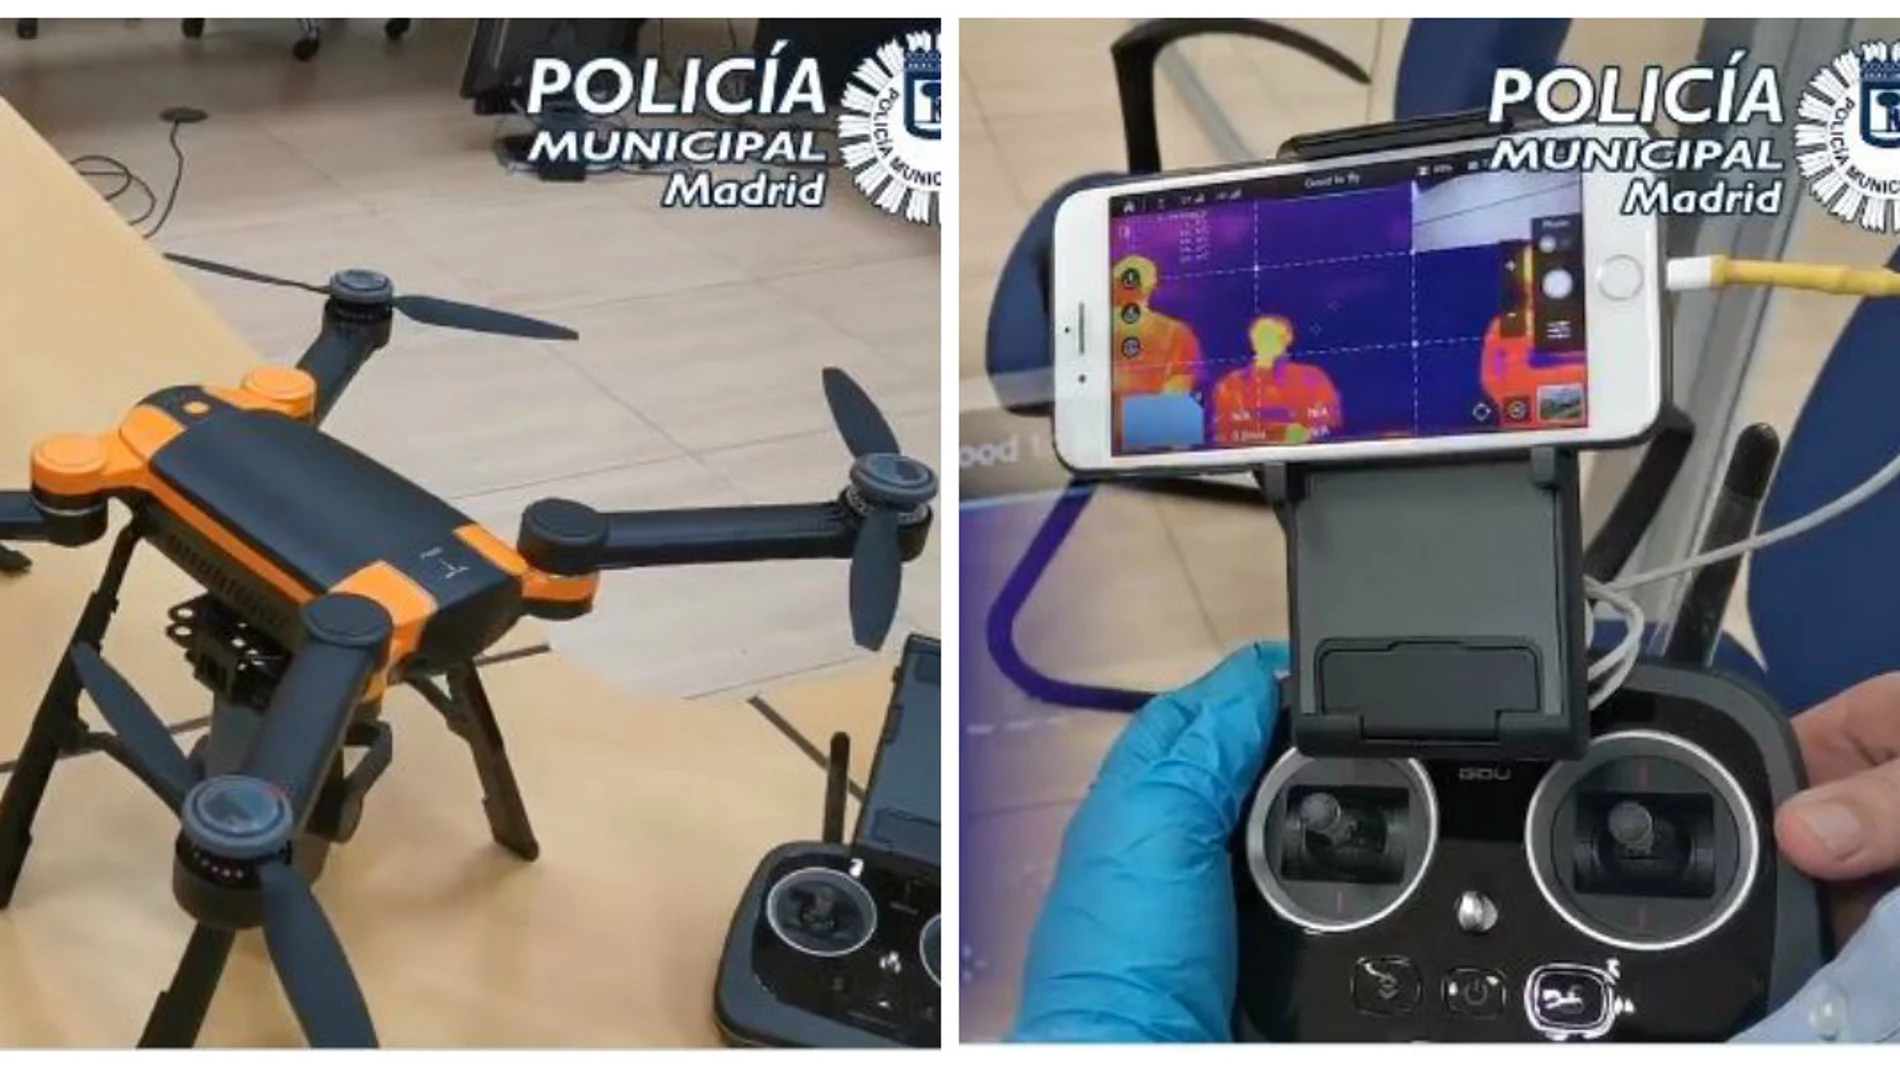 Nuevos drones de la Policía Municipal de Madrid para vigilar el estado de alarma por el coronavirus